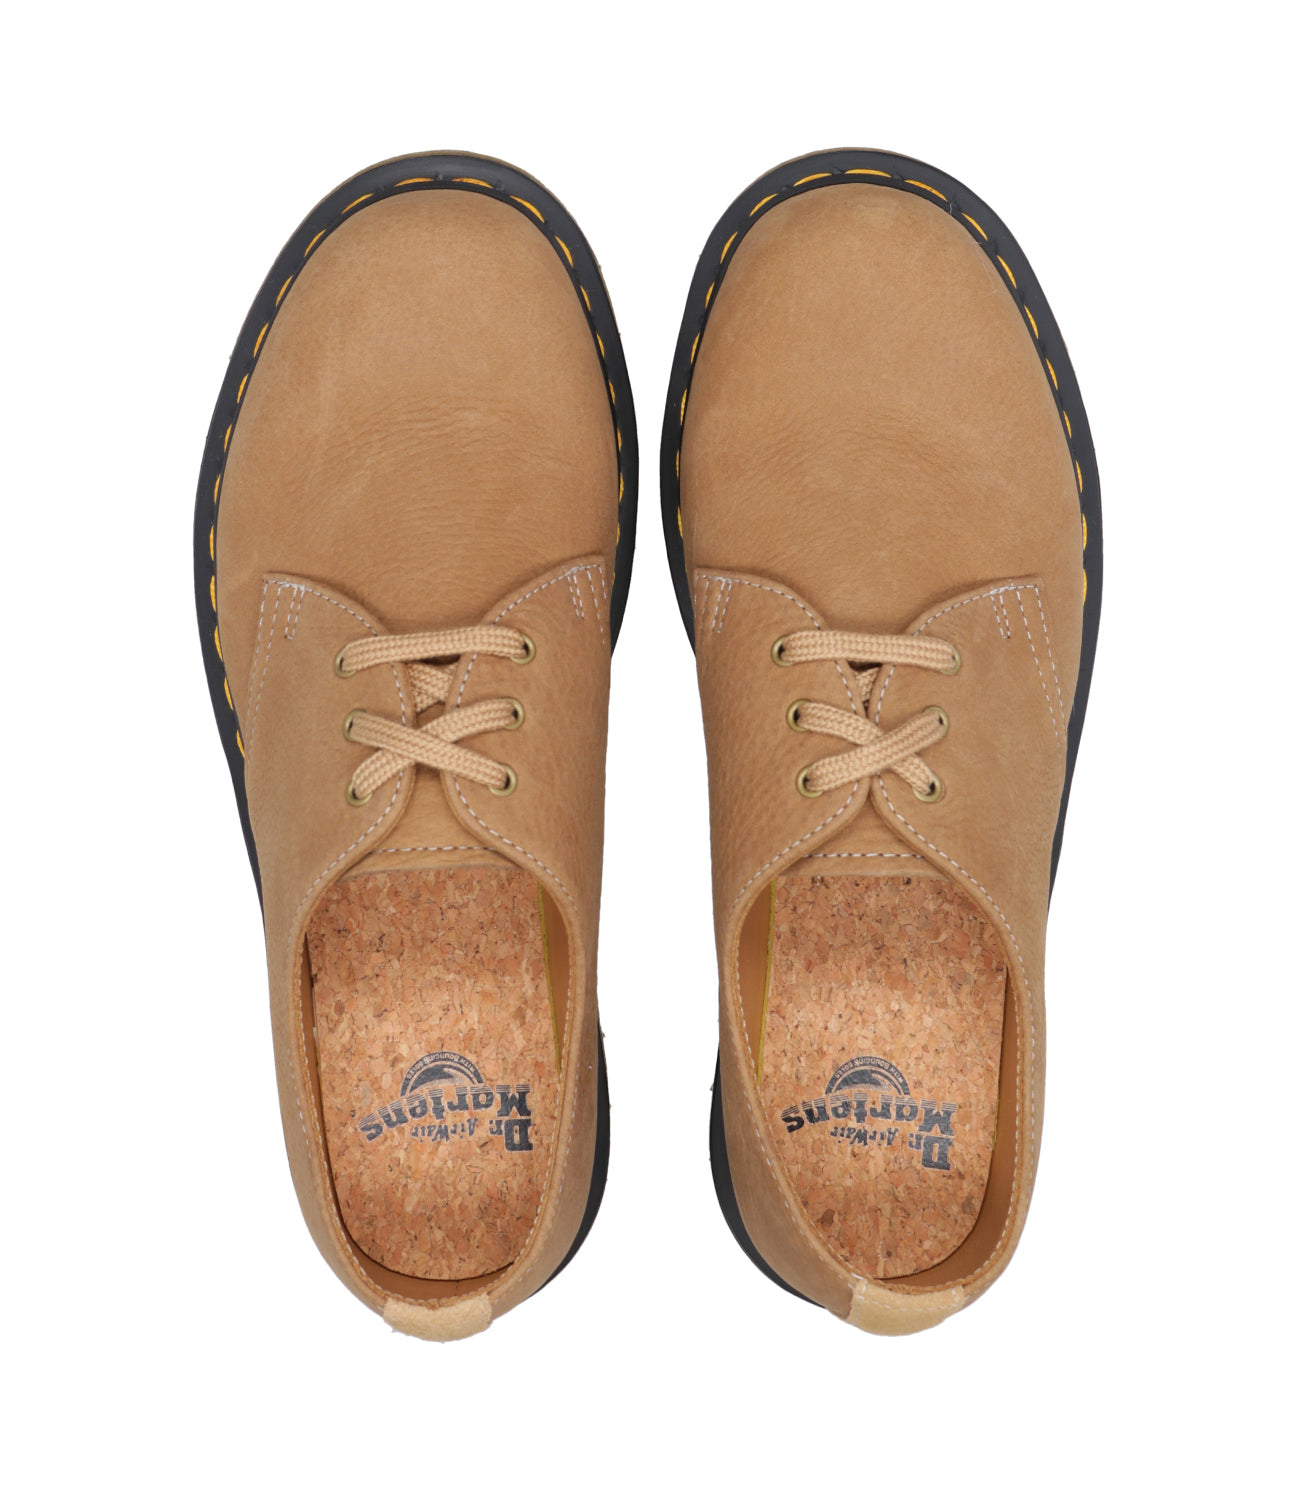 Dr Martens | Shoes 1461 Tan